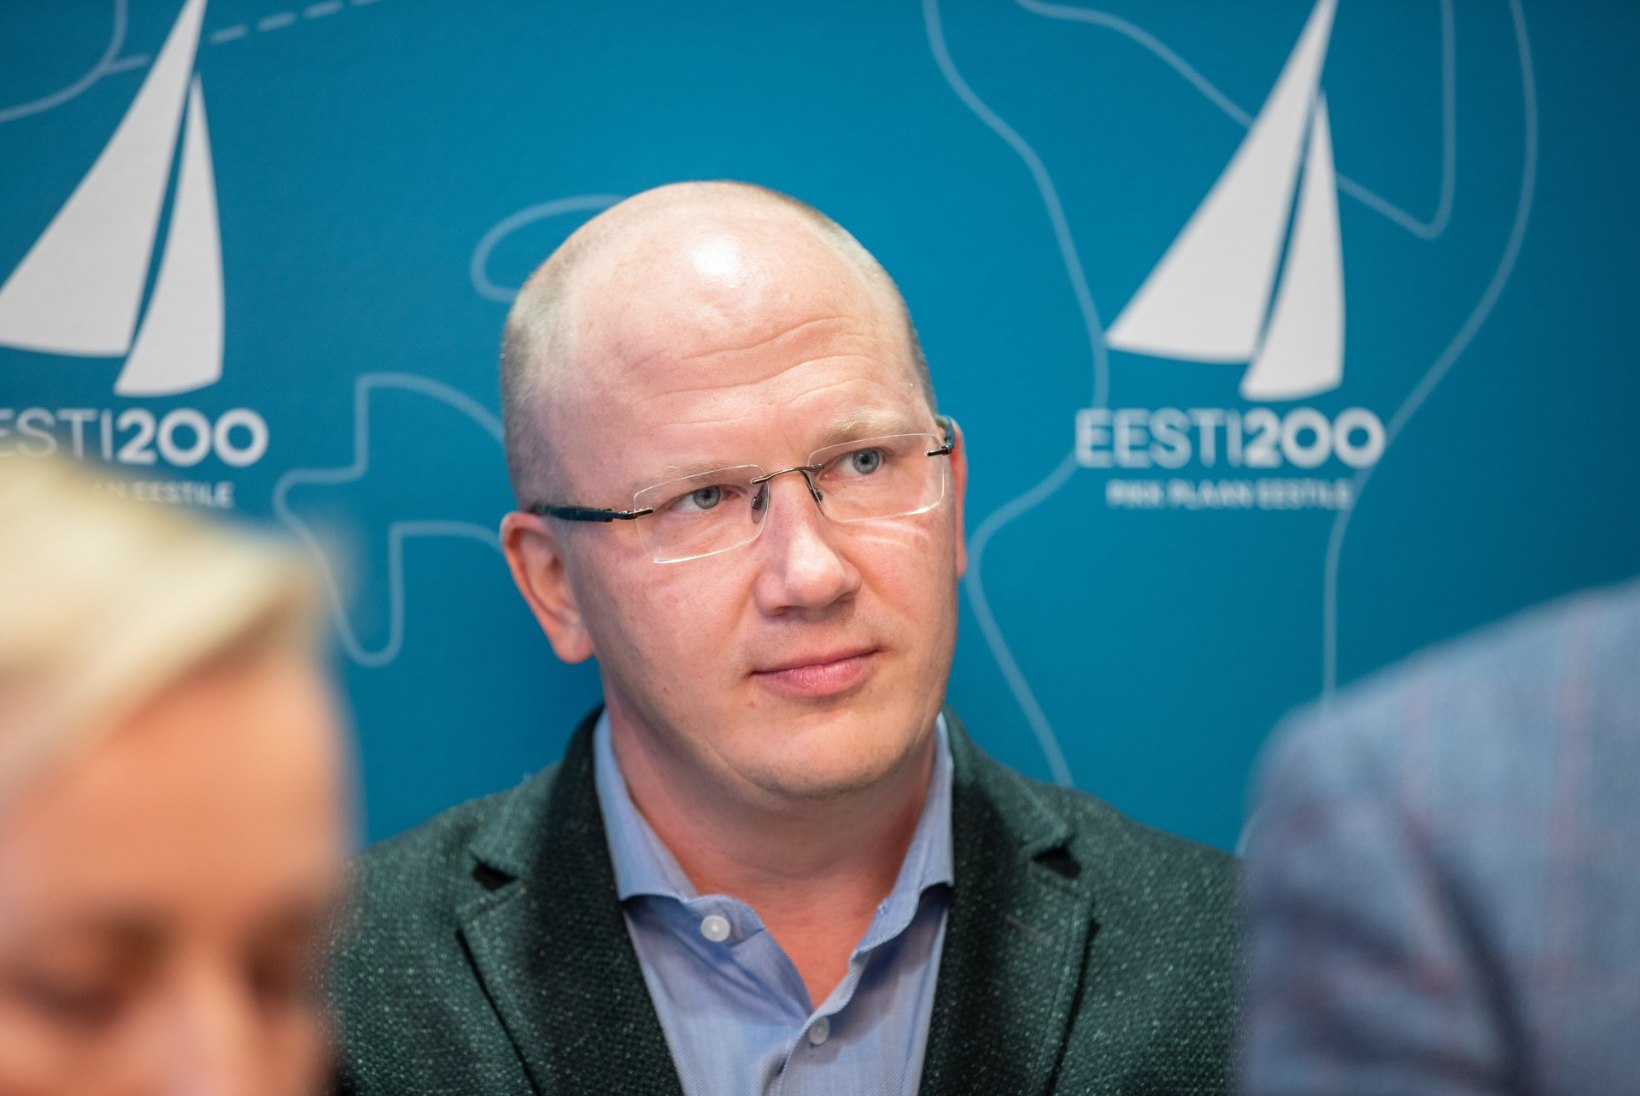 Eesti 200 loob oma ideede tutvustamiseks varivalitsuse